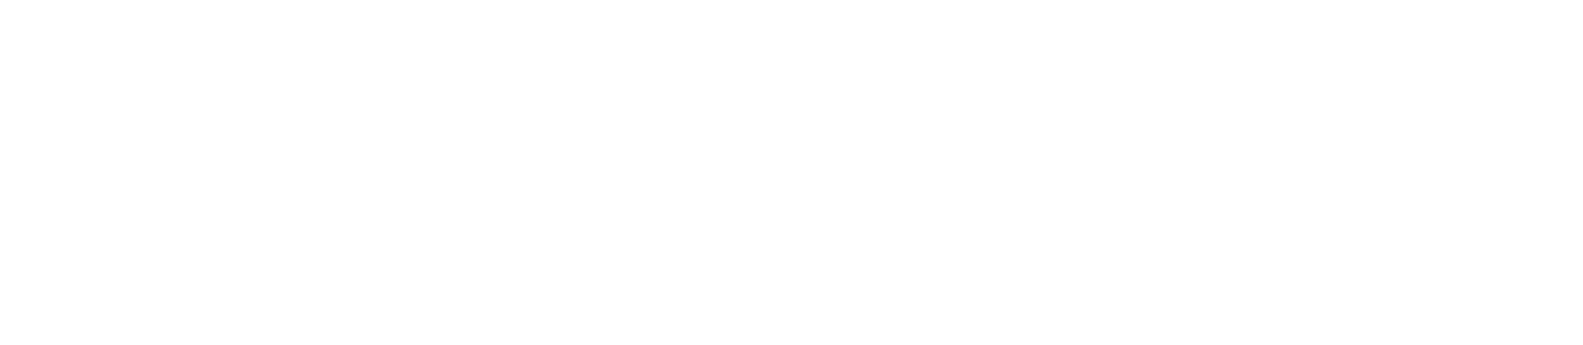 Ozon logo for dark backgrounds (transparent PNG)